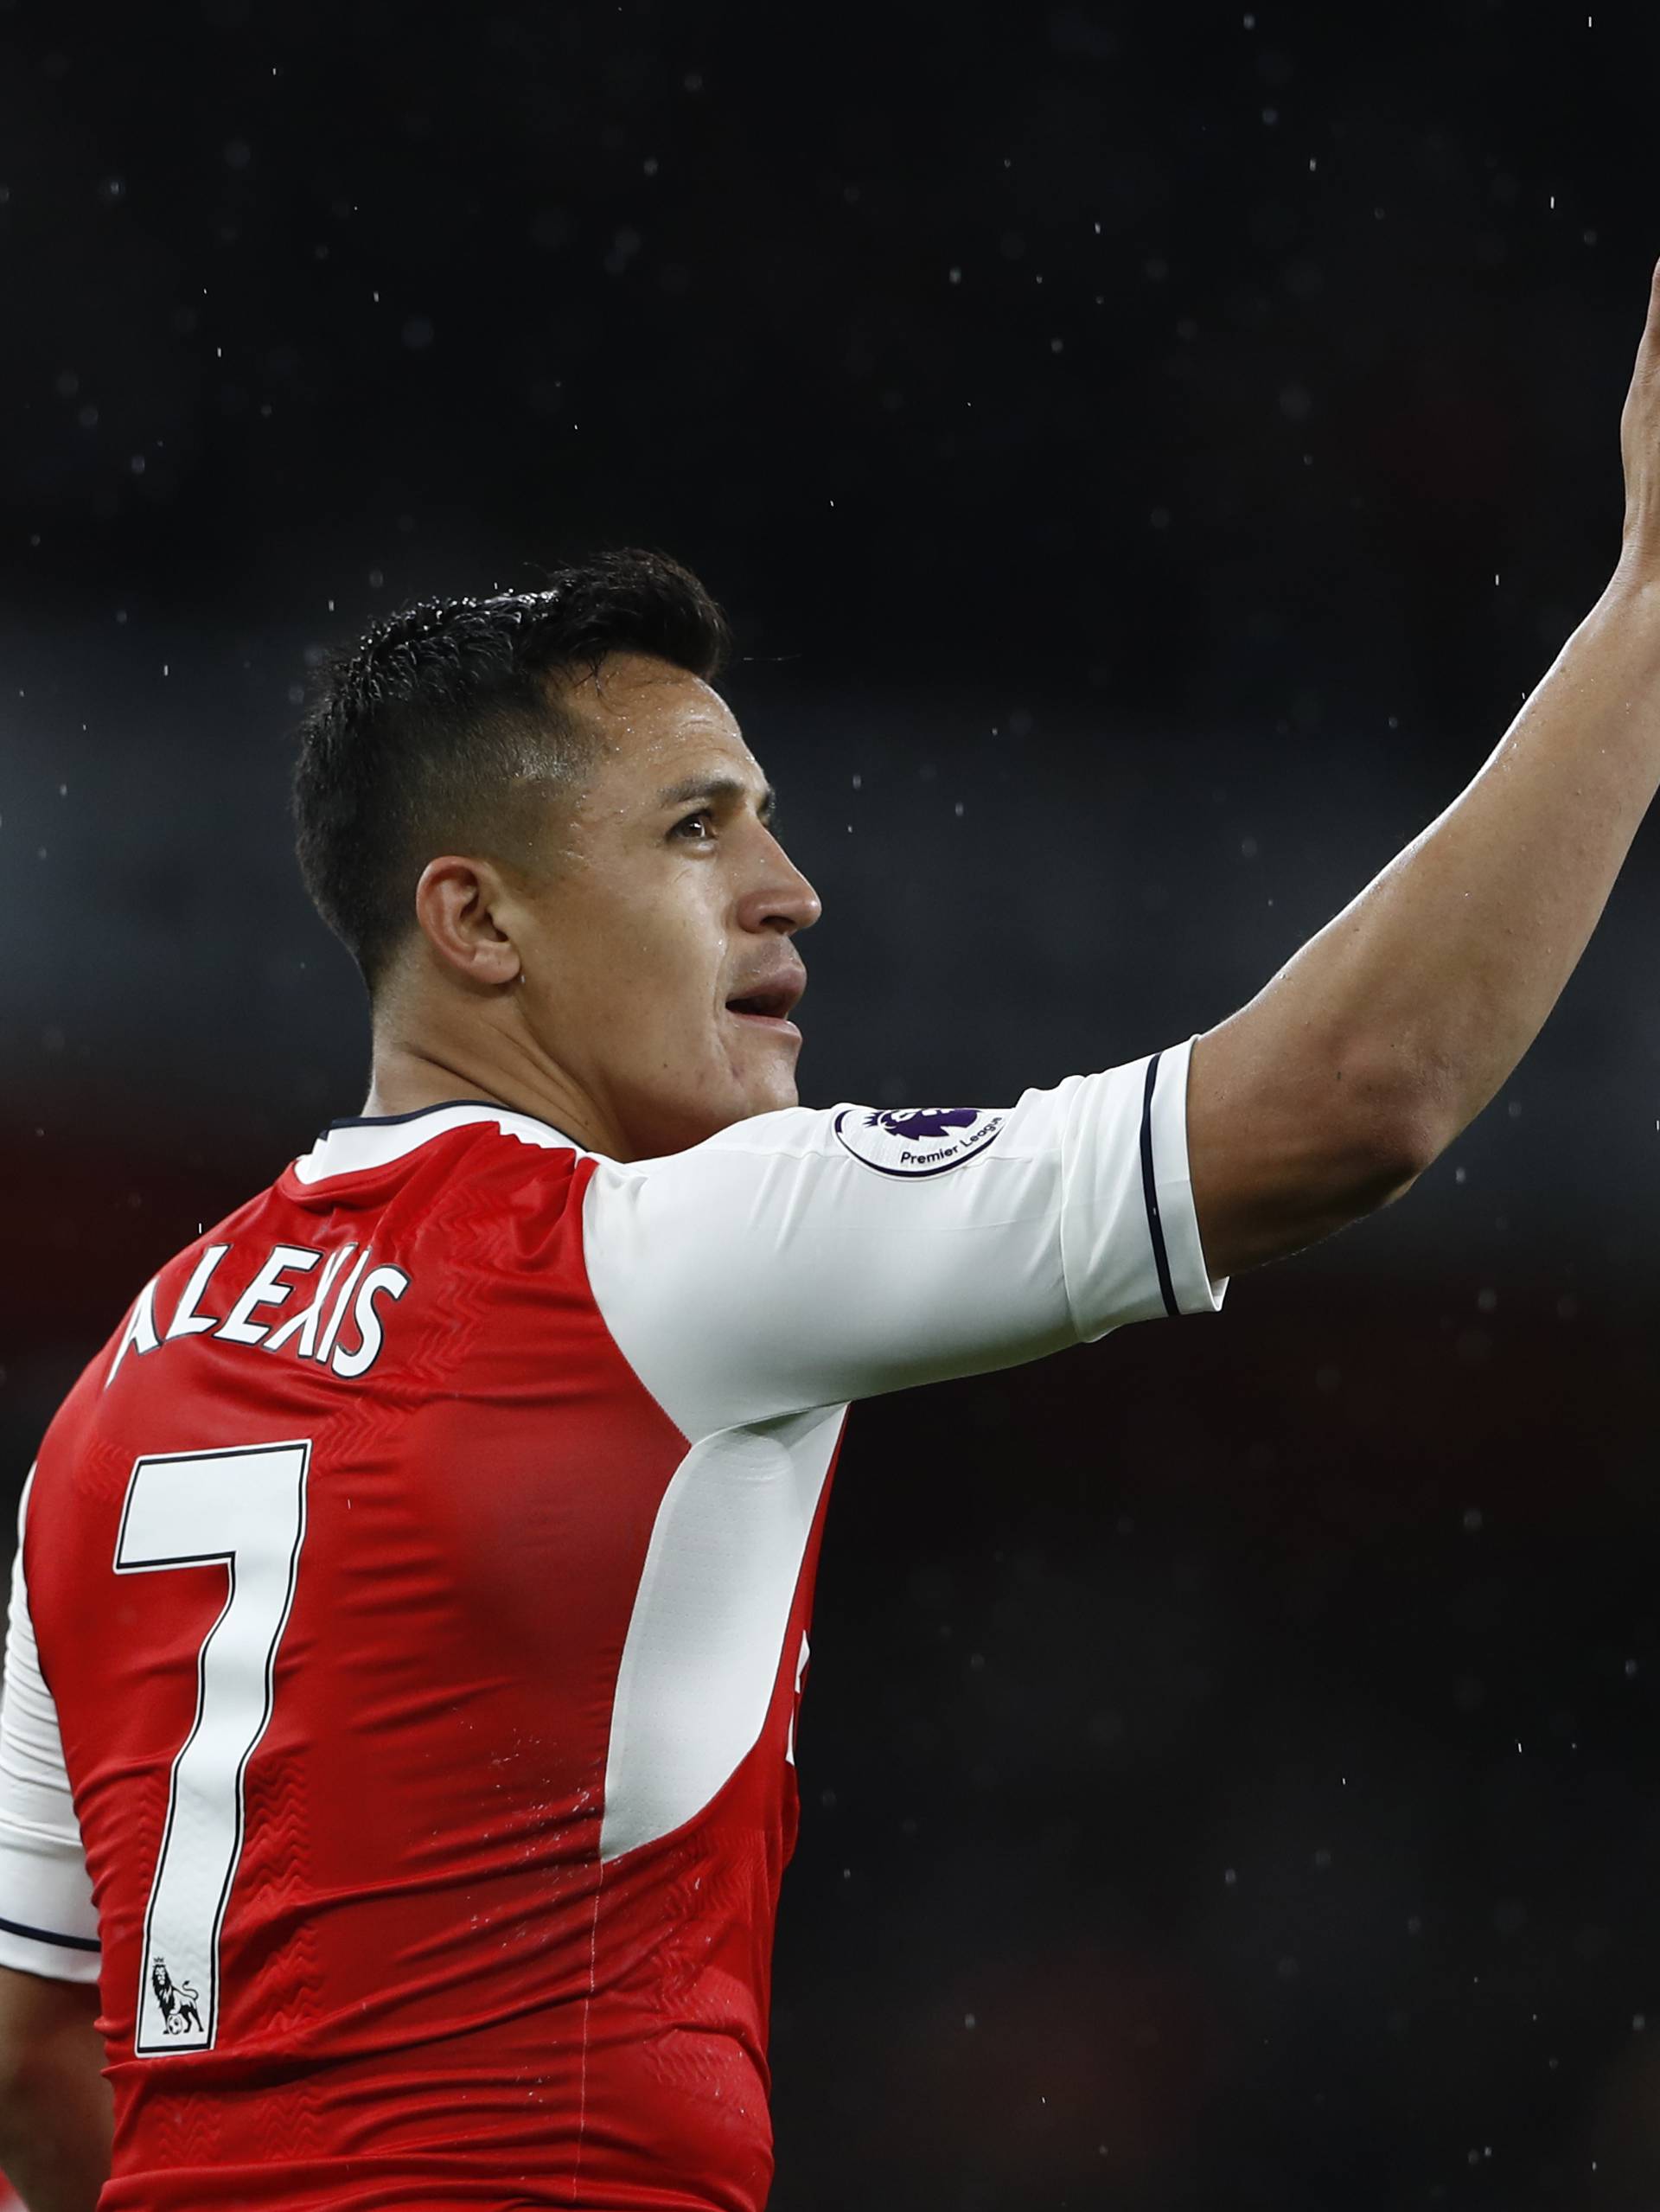 Arsenal's Alexis Sanchez celebrates scoring their first goal